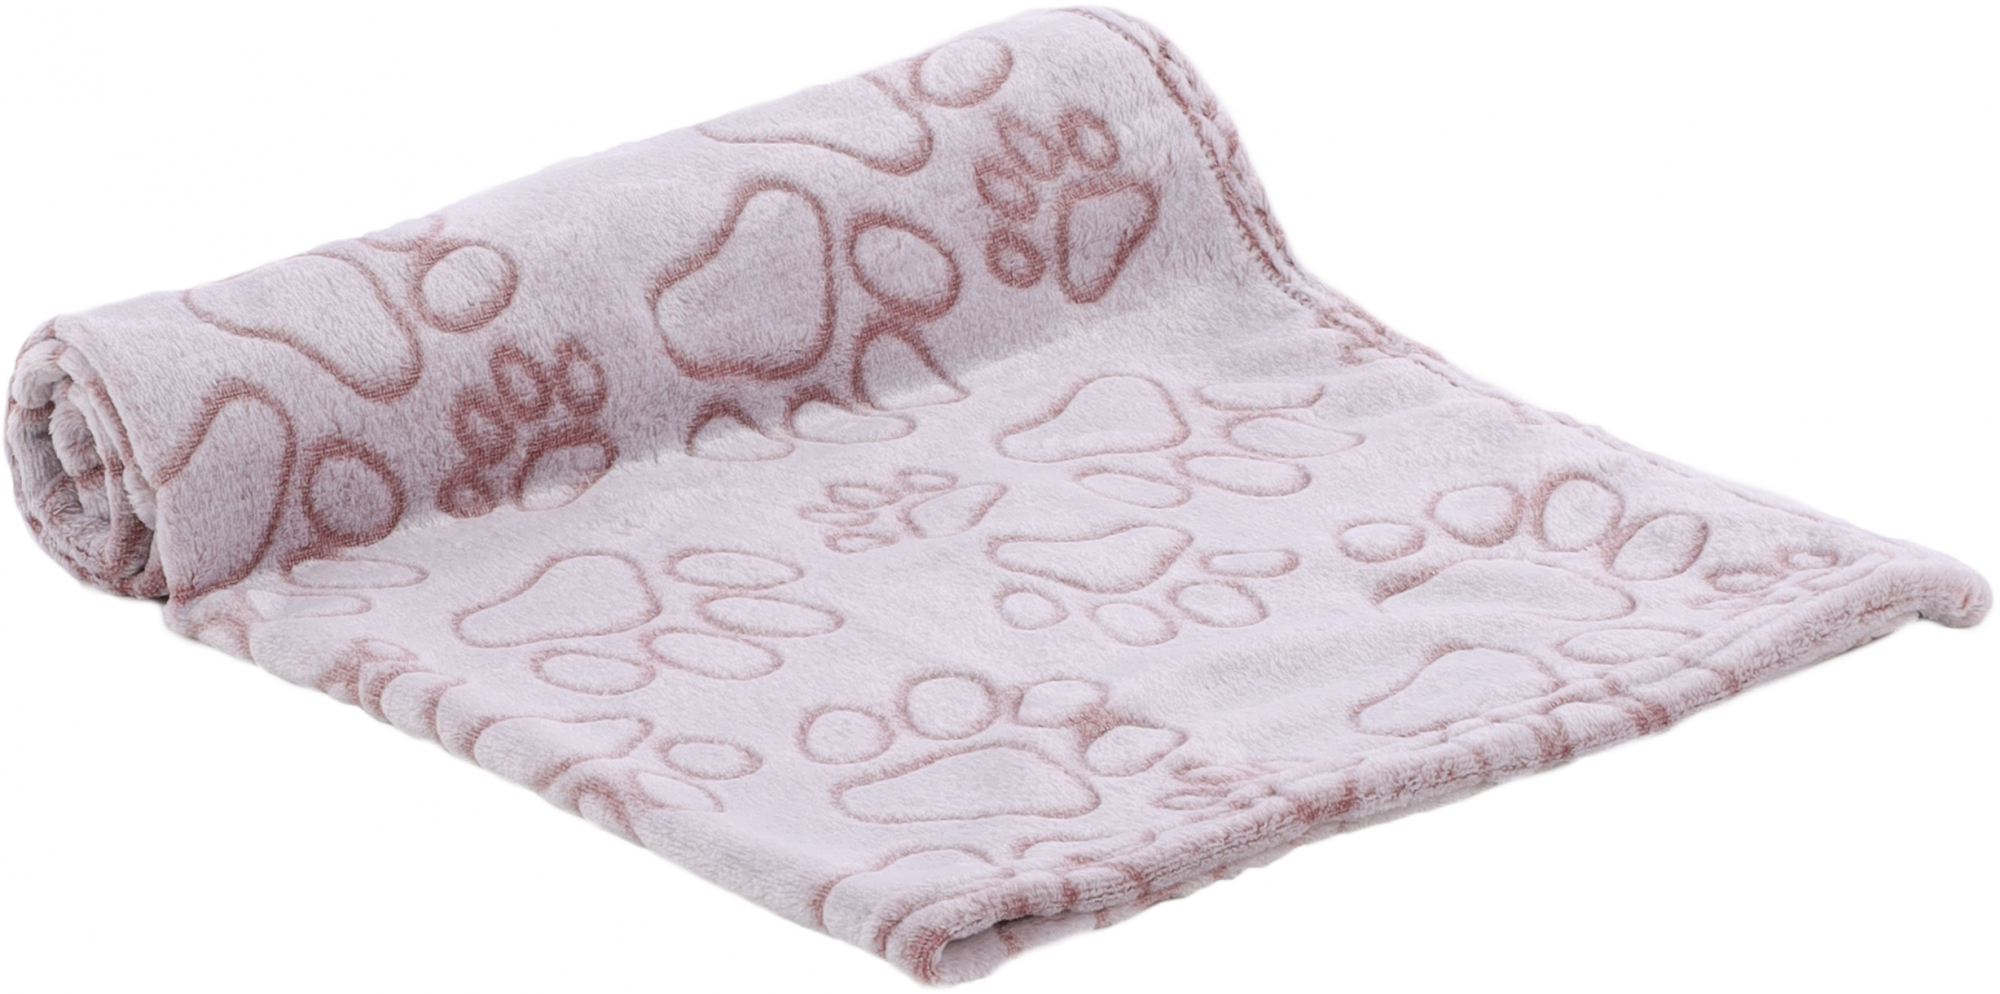 Cobertor polar Lalia para cão e gato - 2 tamanhos disponíveis